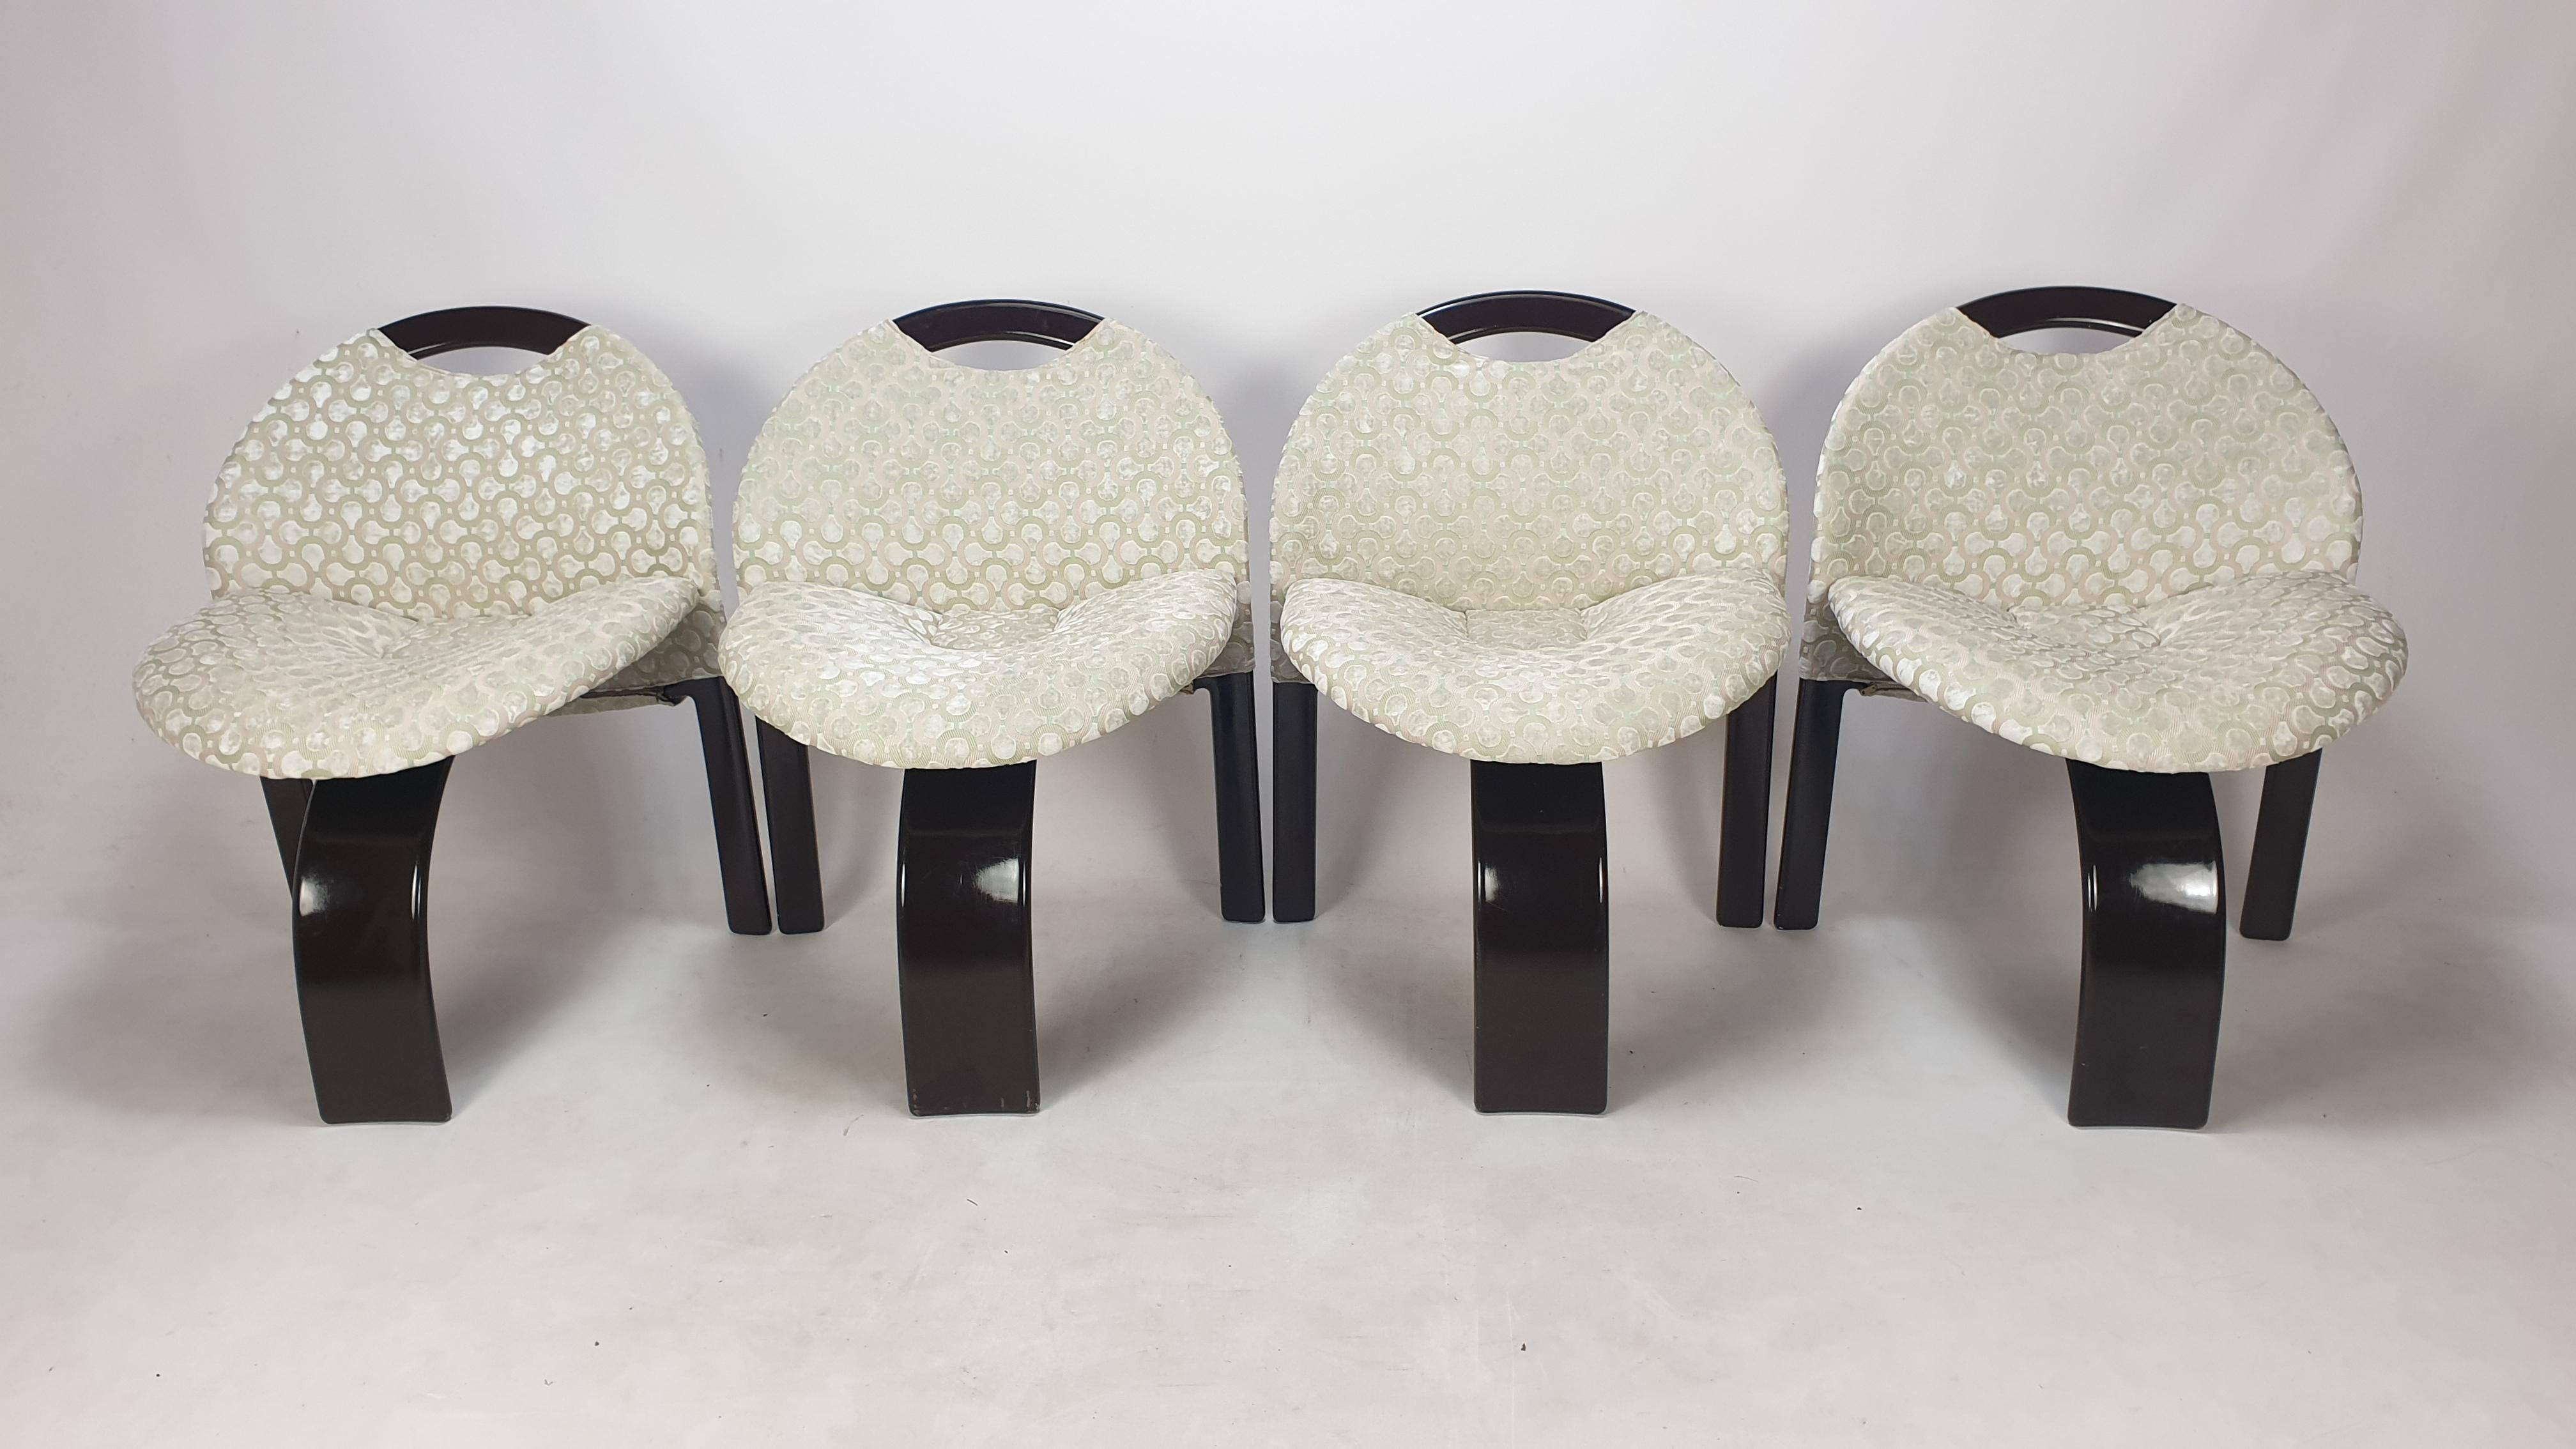 Très bel ensemble de 4 chaises 'Sail' conçu par Giovanni Offredi et fabriqué par Saporiti, Italie 1973. 

Ces chaises confortables viennent d'être restaurées avec un nouveau tissu, elles sont donc en parfait état.
Ils sont tapissés d'un étonnant